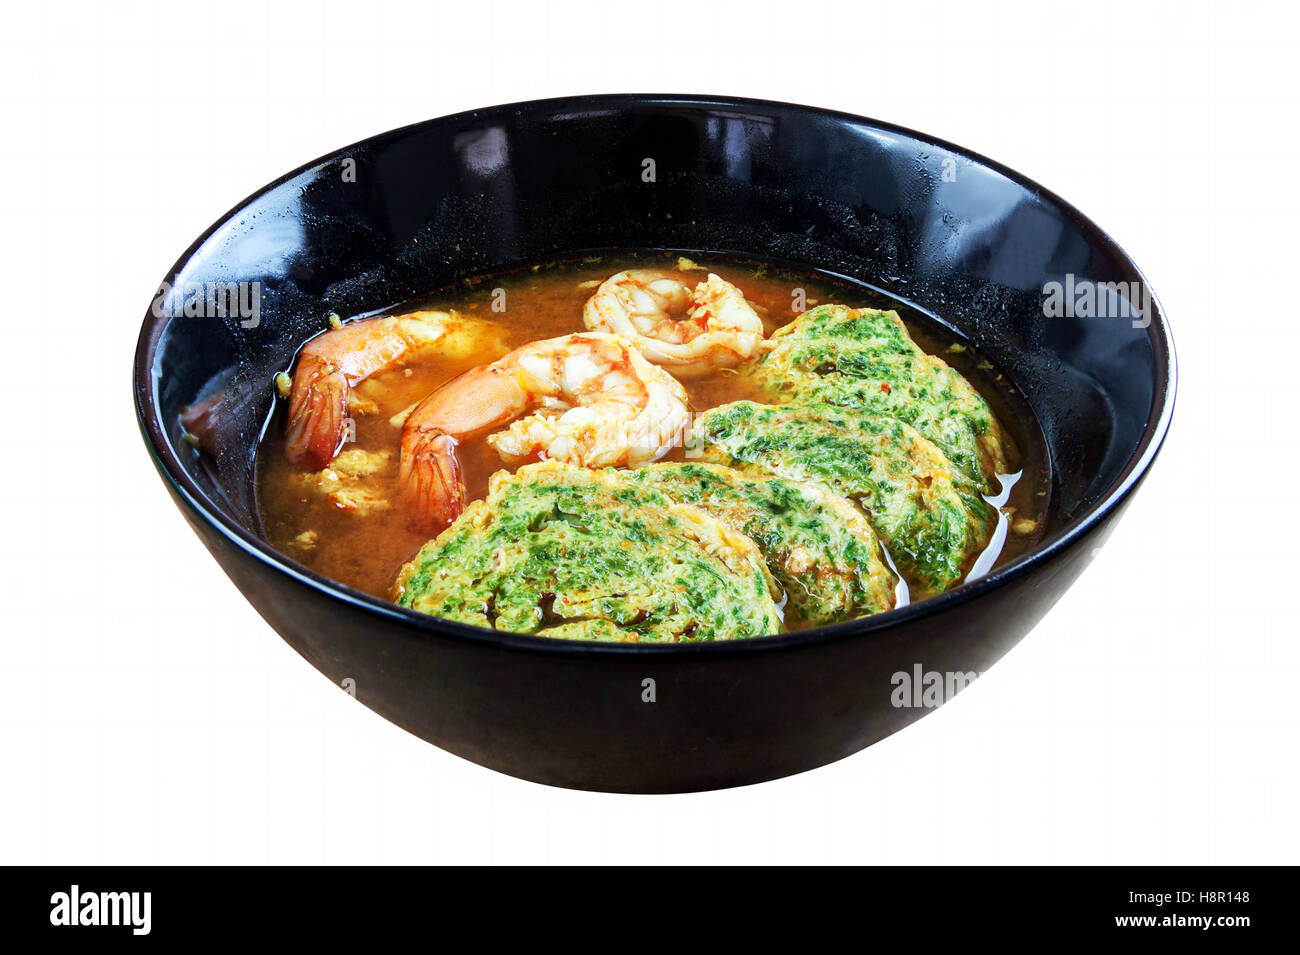 Soupe aigre et piquante curry aux crevettes et acacia pennata omelette. Plat en noir sur fond blanc. Objets avec chemins de détourage Banque D'Images